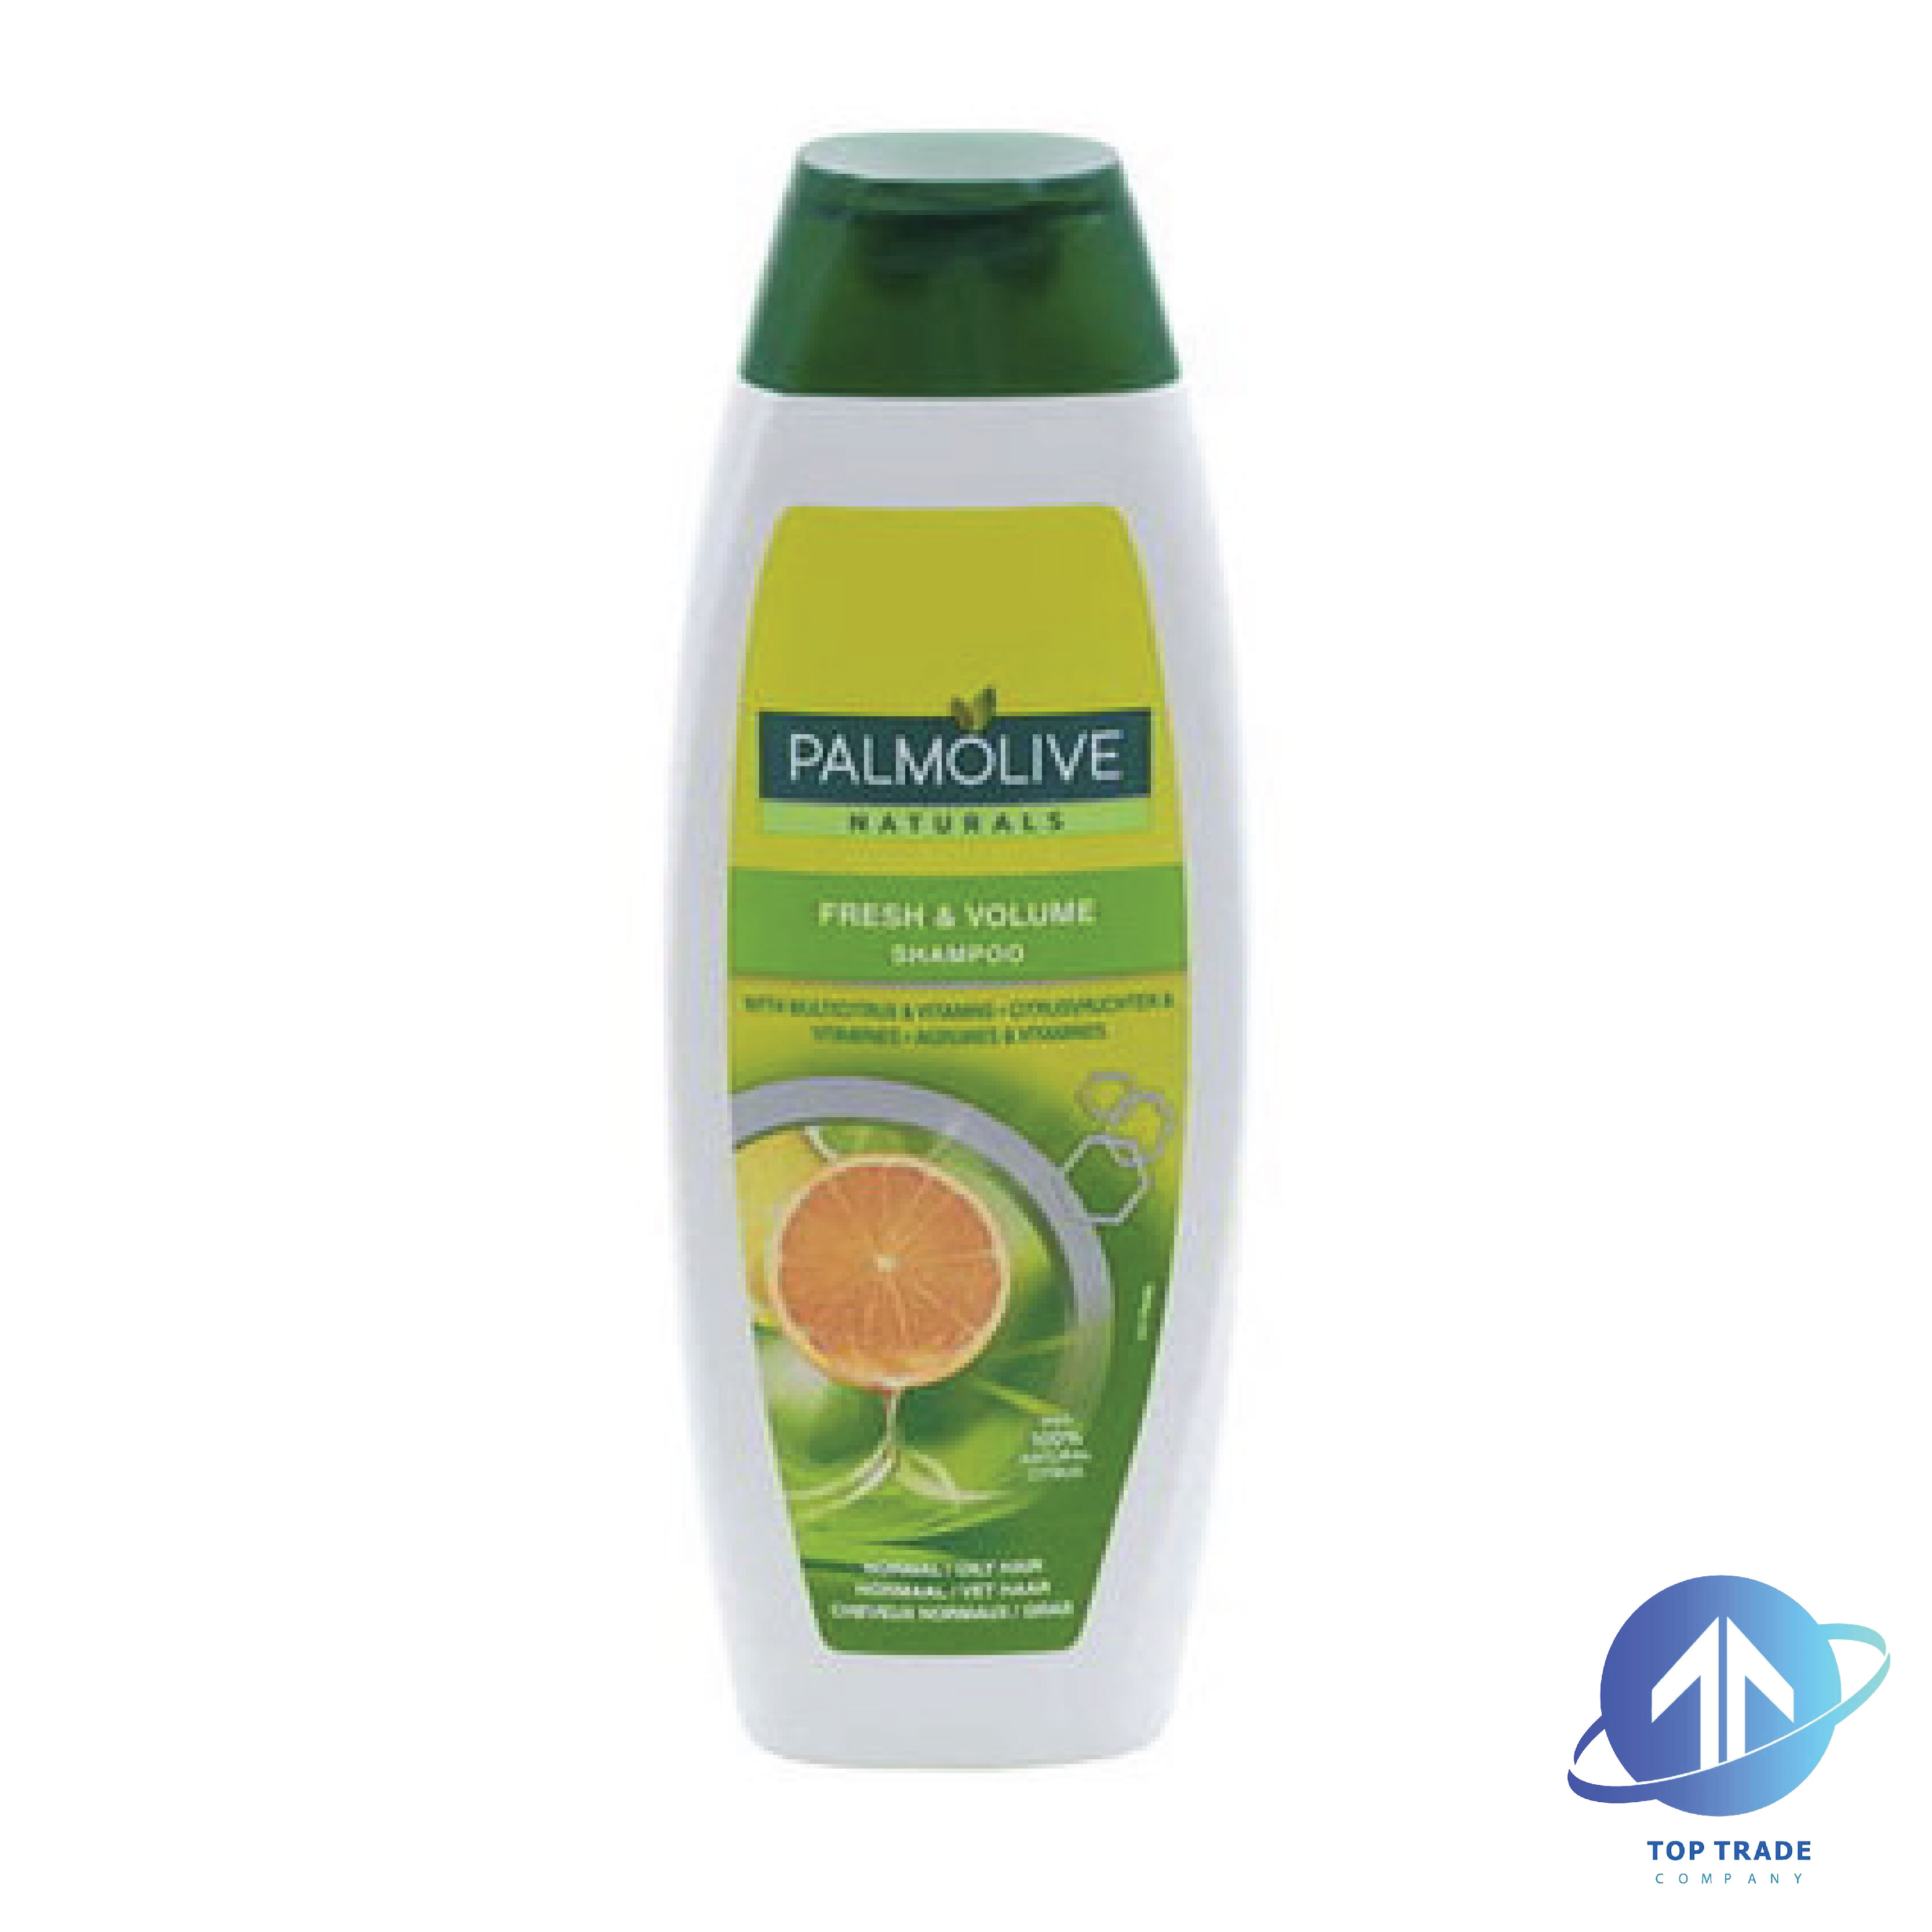 Palmolive shampoo fresh & volume citrus 350ml